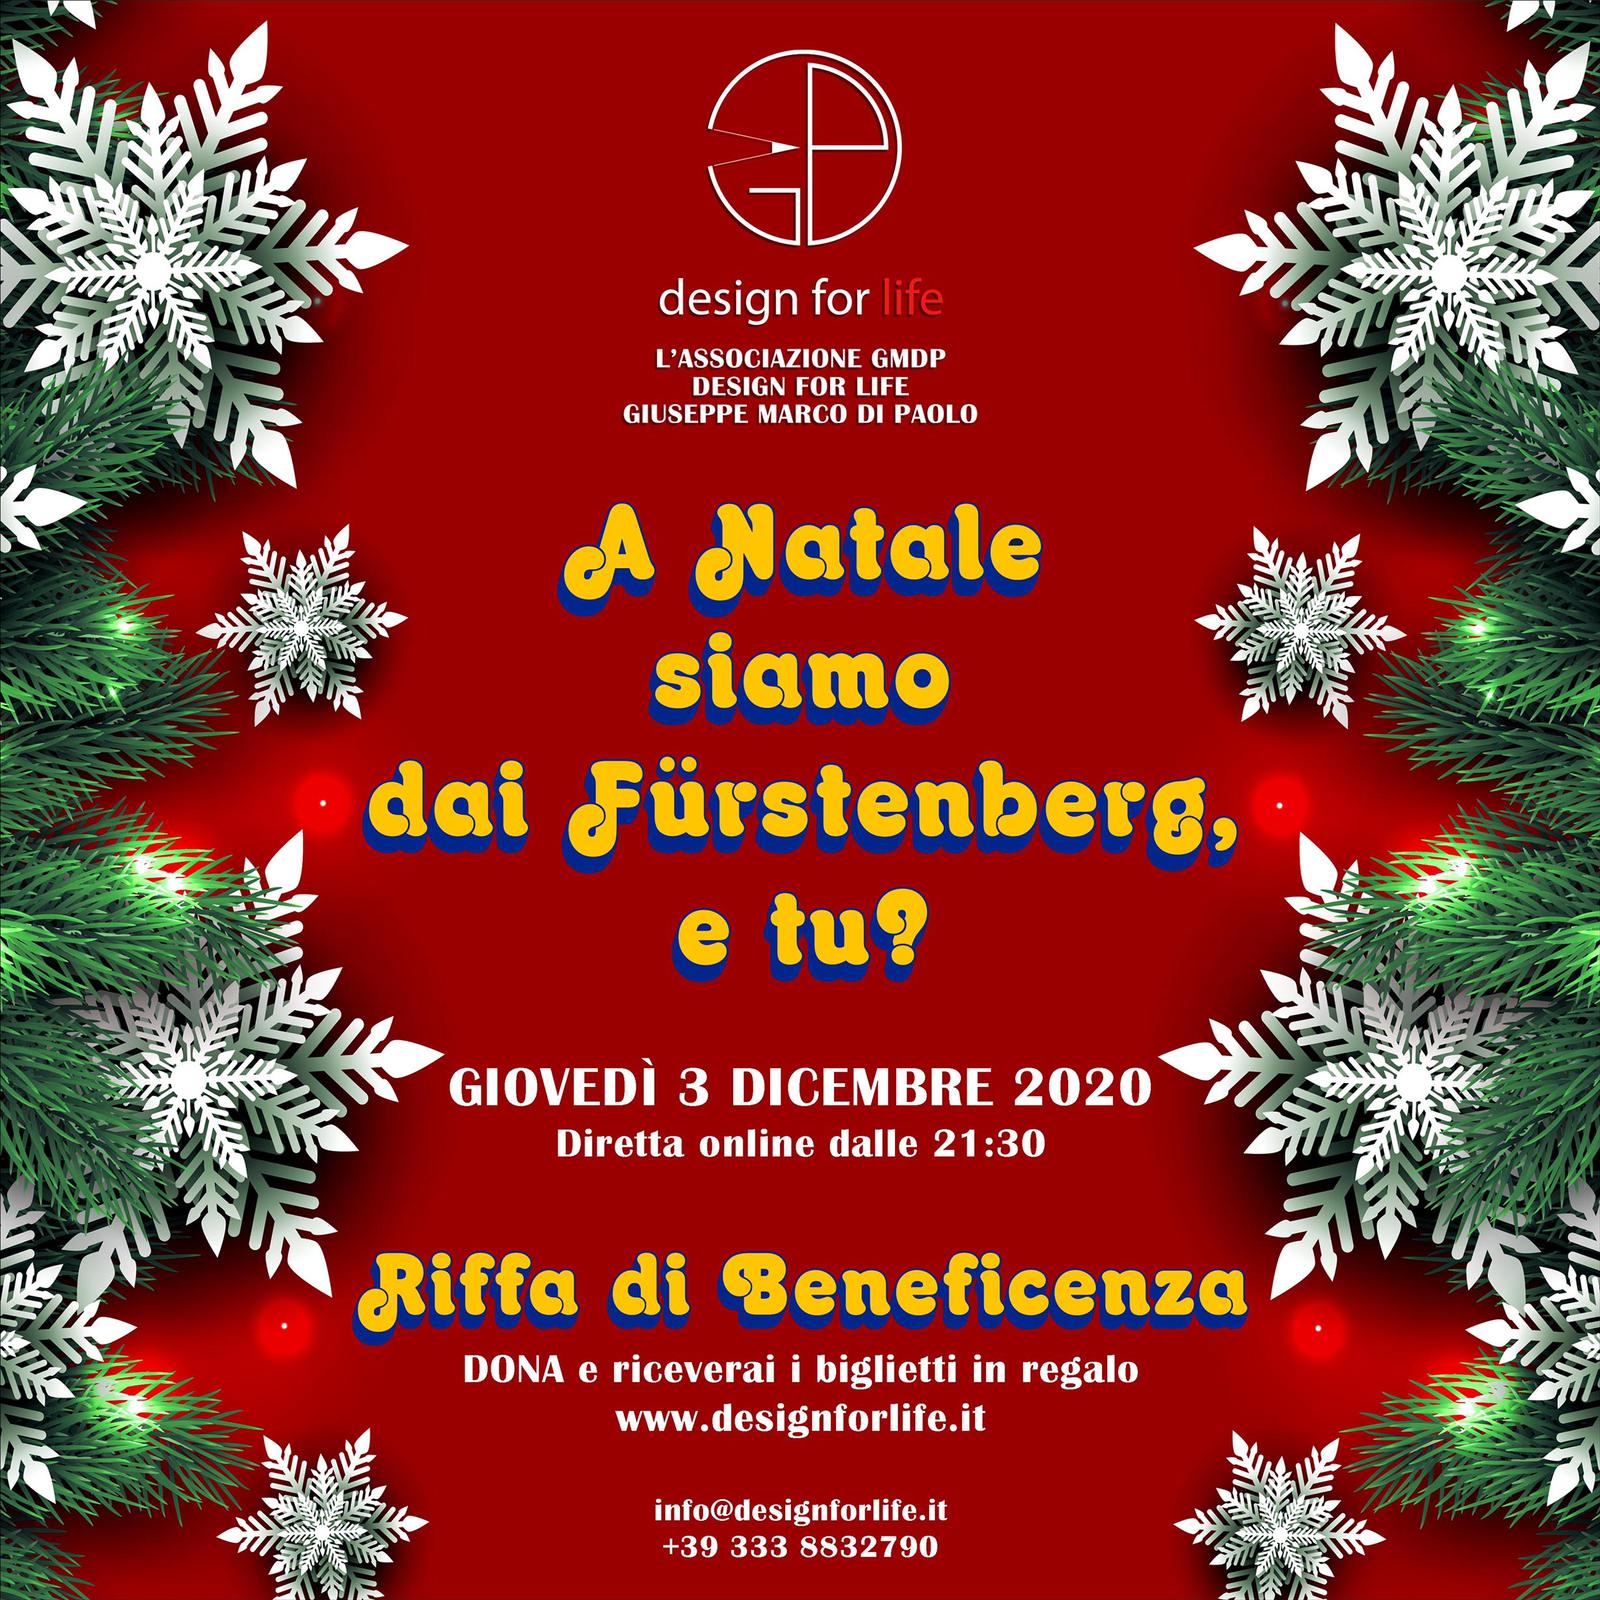 La ‘riffa di Natale’ dell’associazione GMDP - Design for Life diventa online per regalare un giardino alla Pediatria dell'Ospedale Papa Giovanni XXIII di Bergamo
